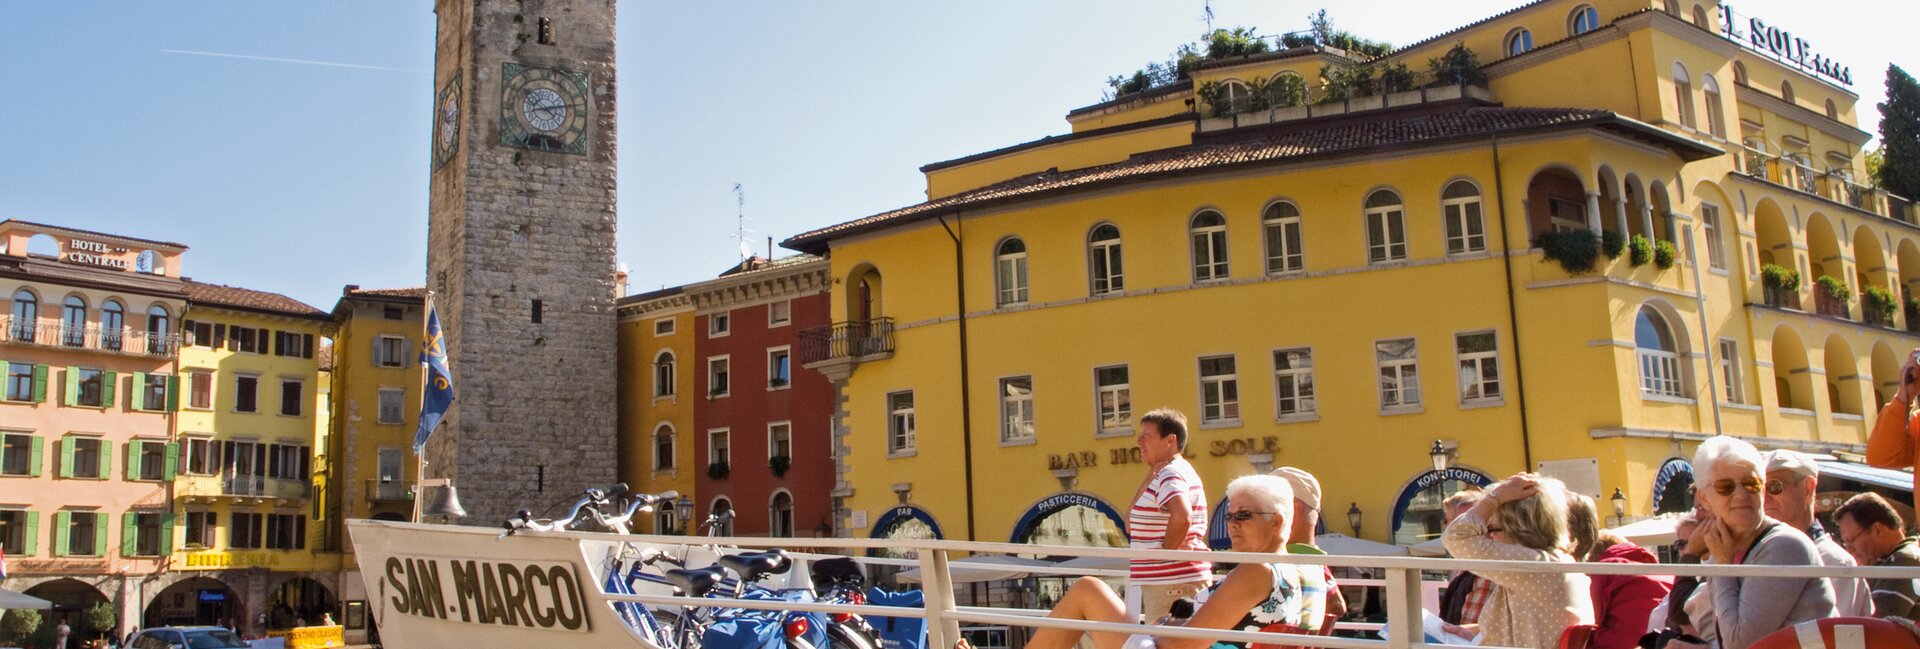 Výlet trajektem z Riva del Garda nebo z Torbole